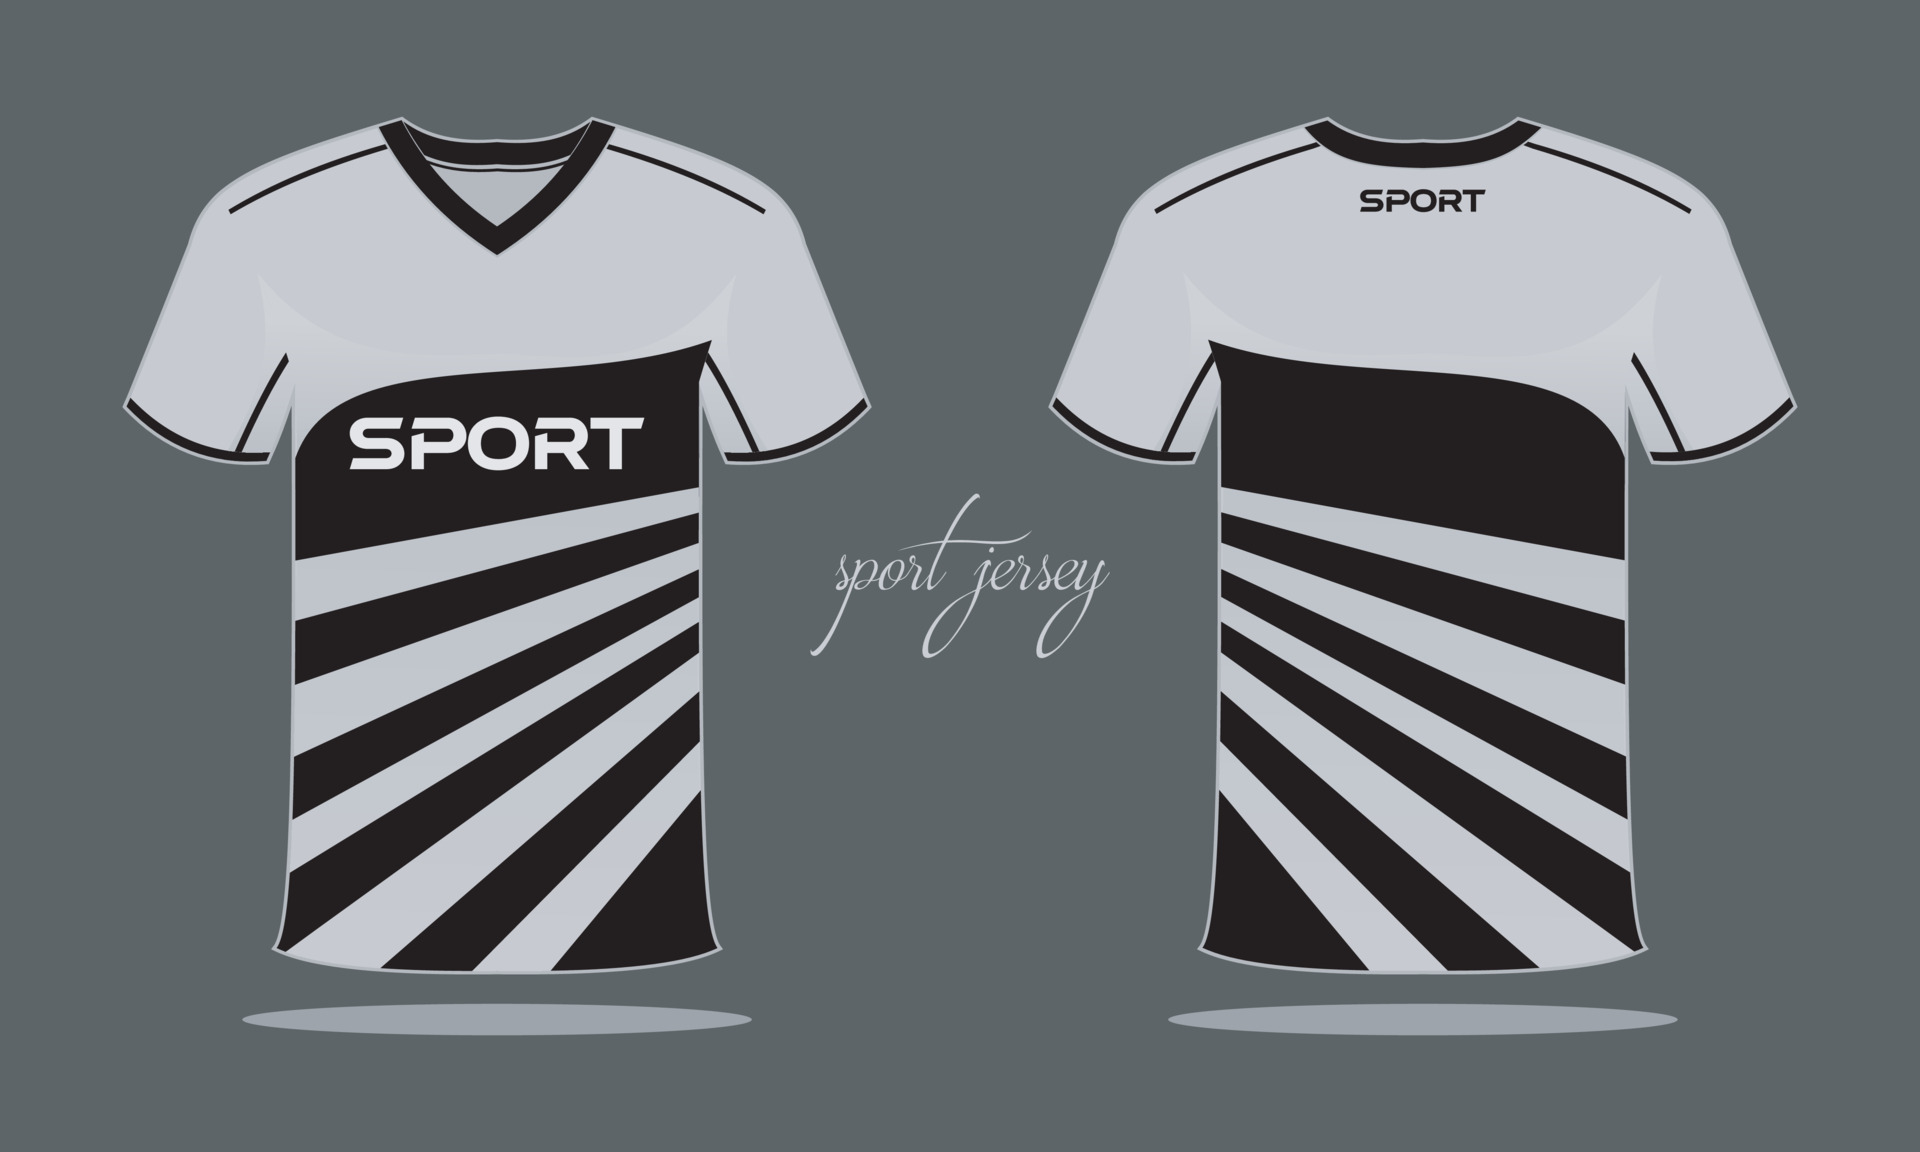 Maillot De Sport Et Modèle De T-shirt Design De Maillot De Sport.  Conception Sportive Pour Le Football, La Course, Les Jeux